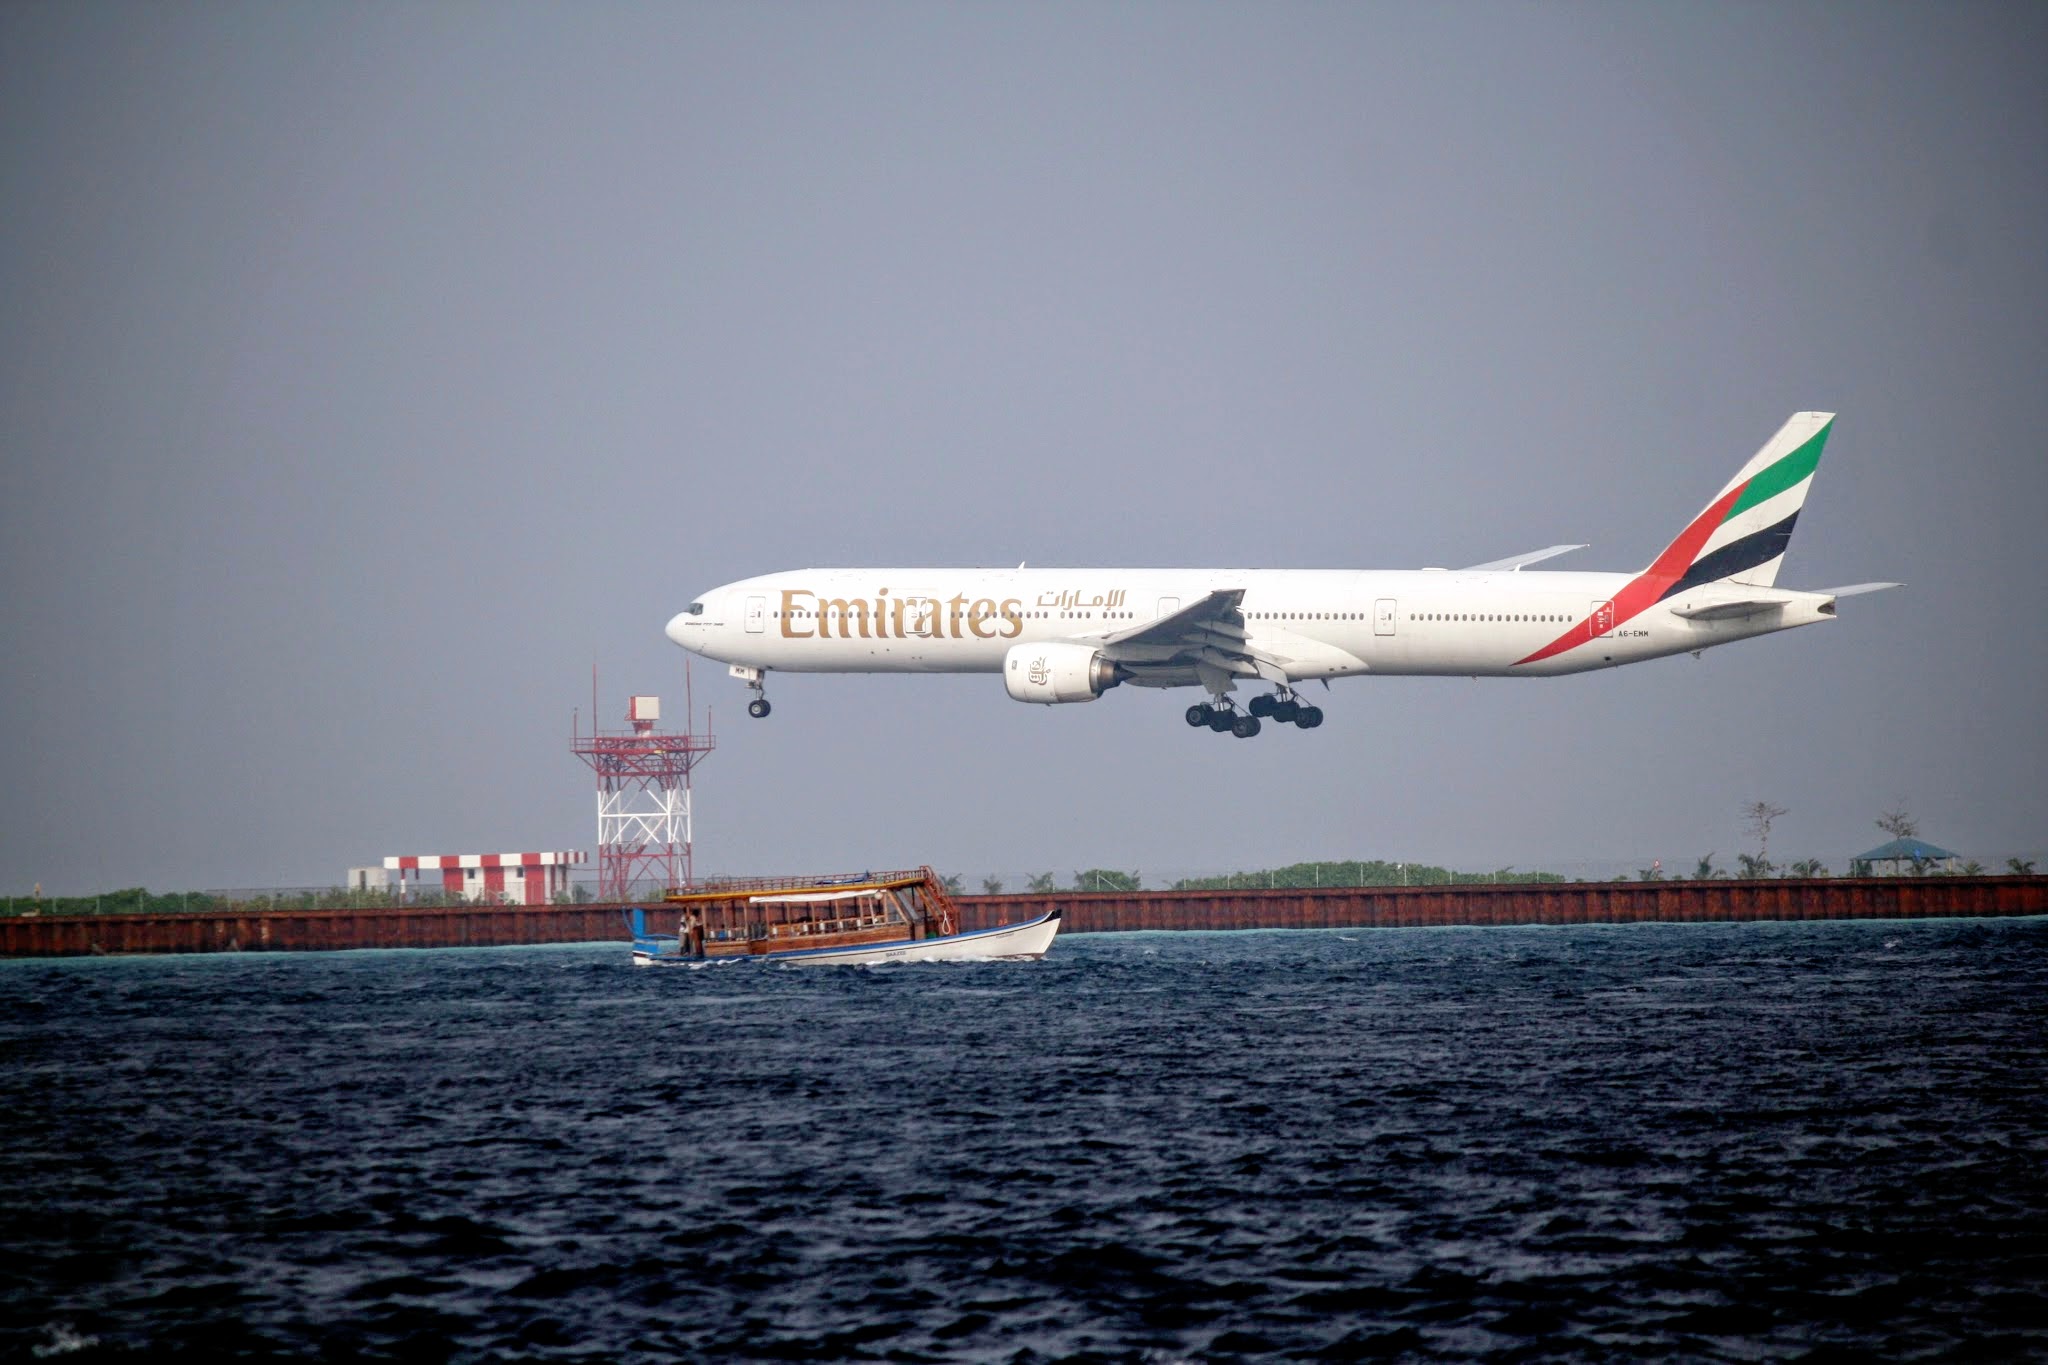 Emirates flight landing at Ibrahim Nasir International Airport